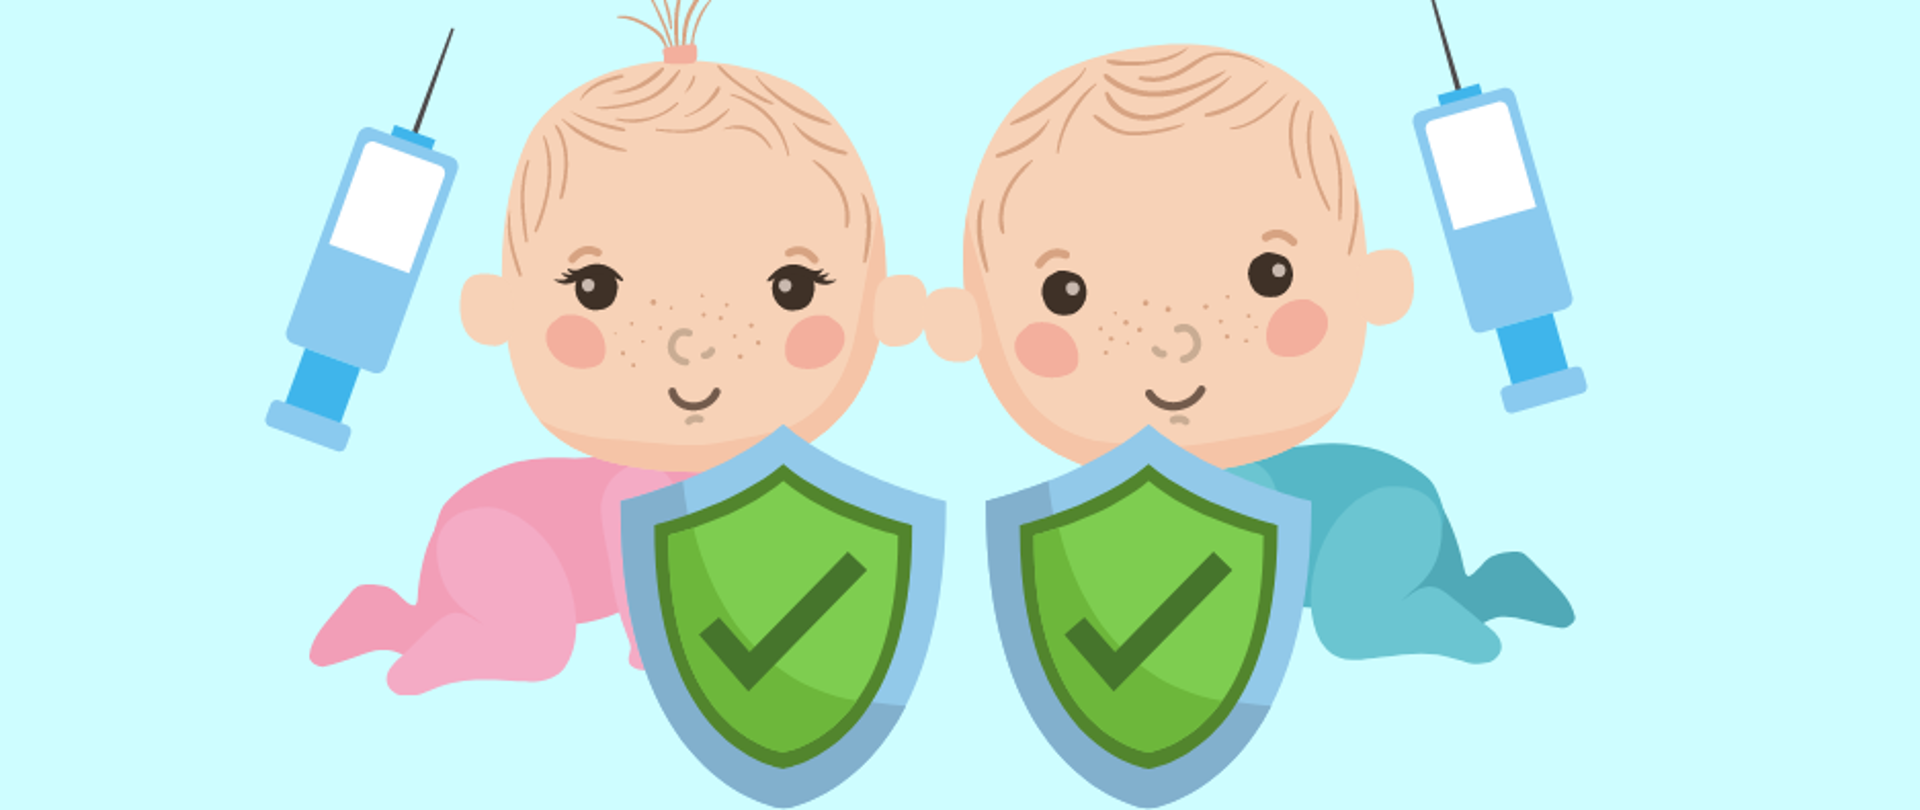 Niebieskie tło z napisem niebieskim 26 kwietnia - 2 maja, grafika dwoje małych dzieci 2 strzykawki oraz zielone tarcze chroniące dzieci z znakiem akceptacji. 